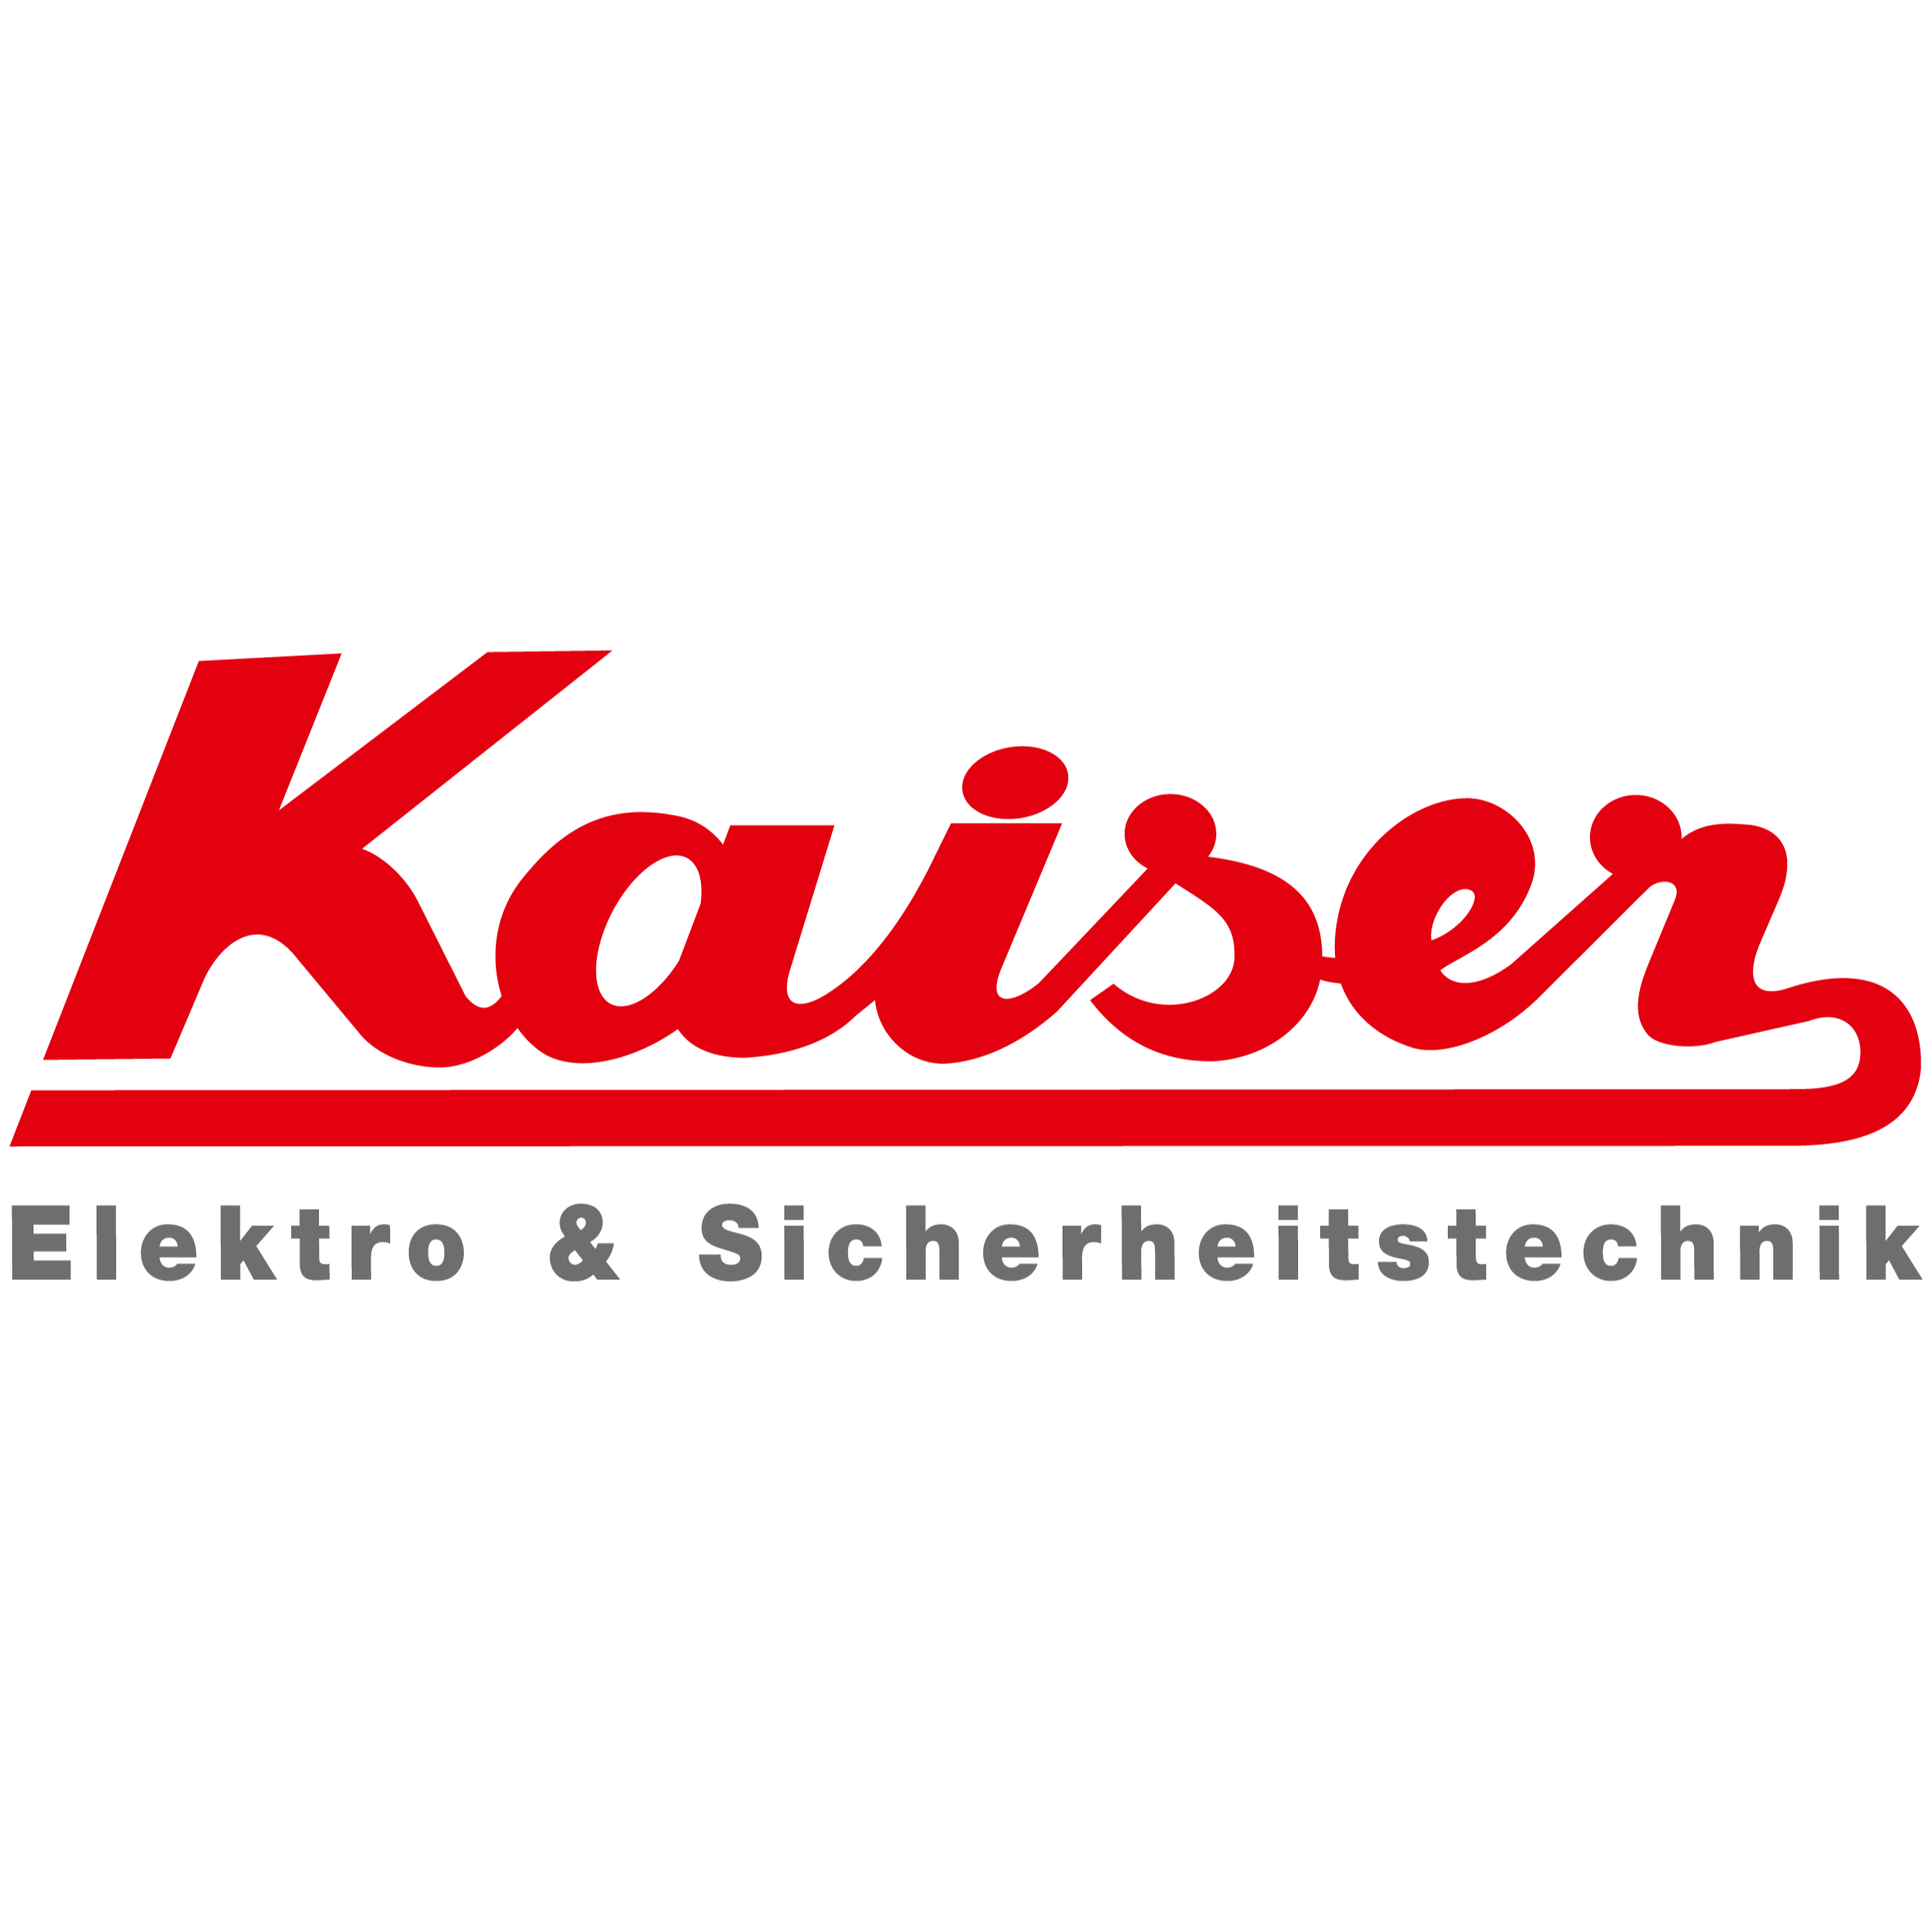 Logo von Elektrohaus Kaiser Michael Kaiser e. K.